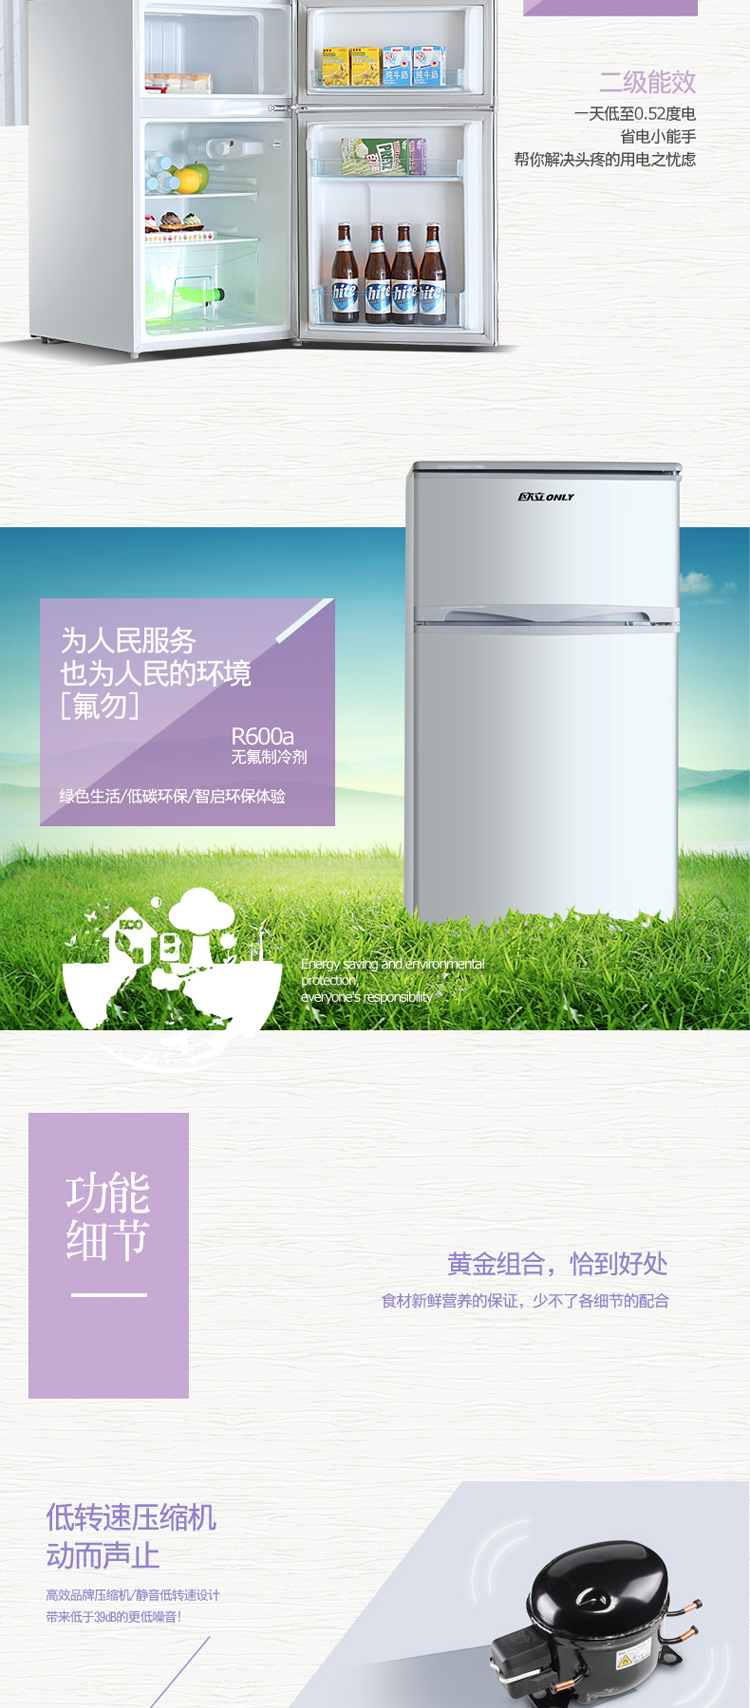 欧立(ONLY) BCD-88 小冰箱家用节能 小型冰箱双门冷藏冷冻电冰箱